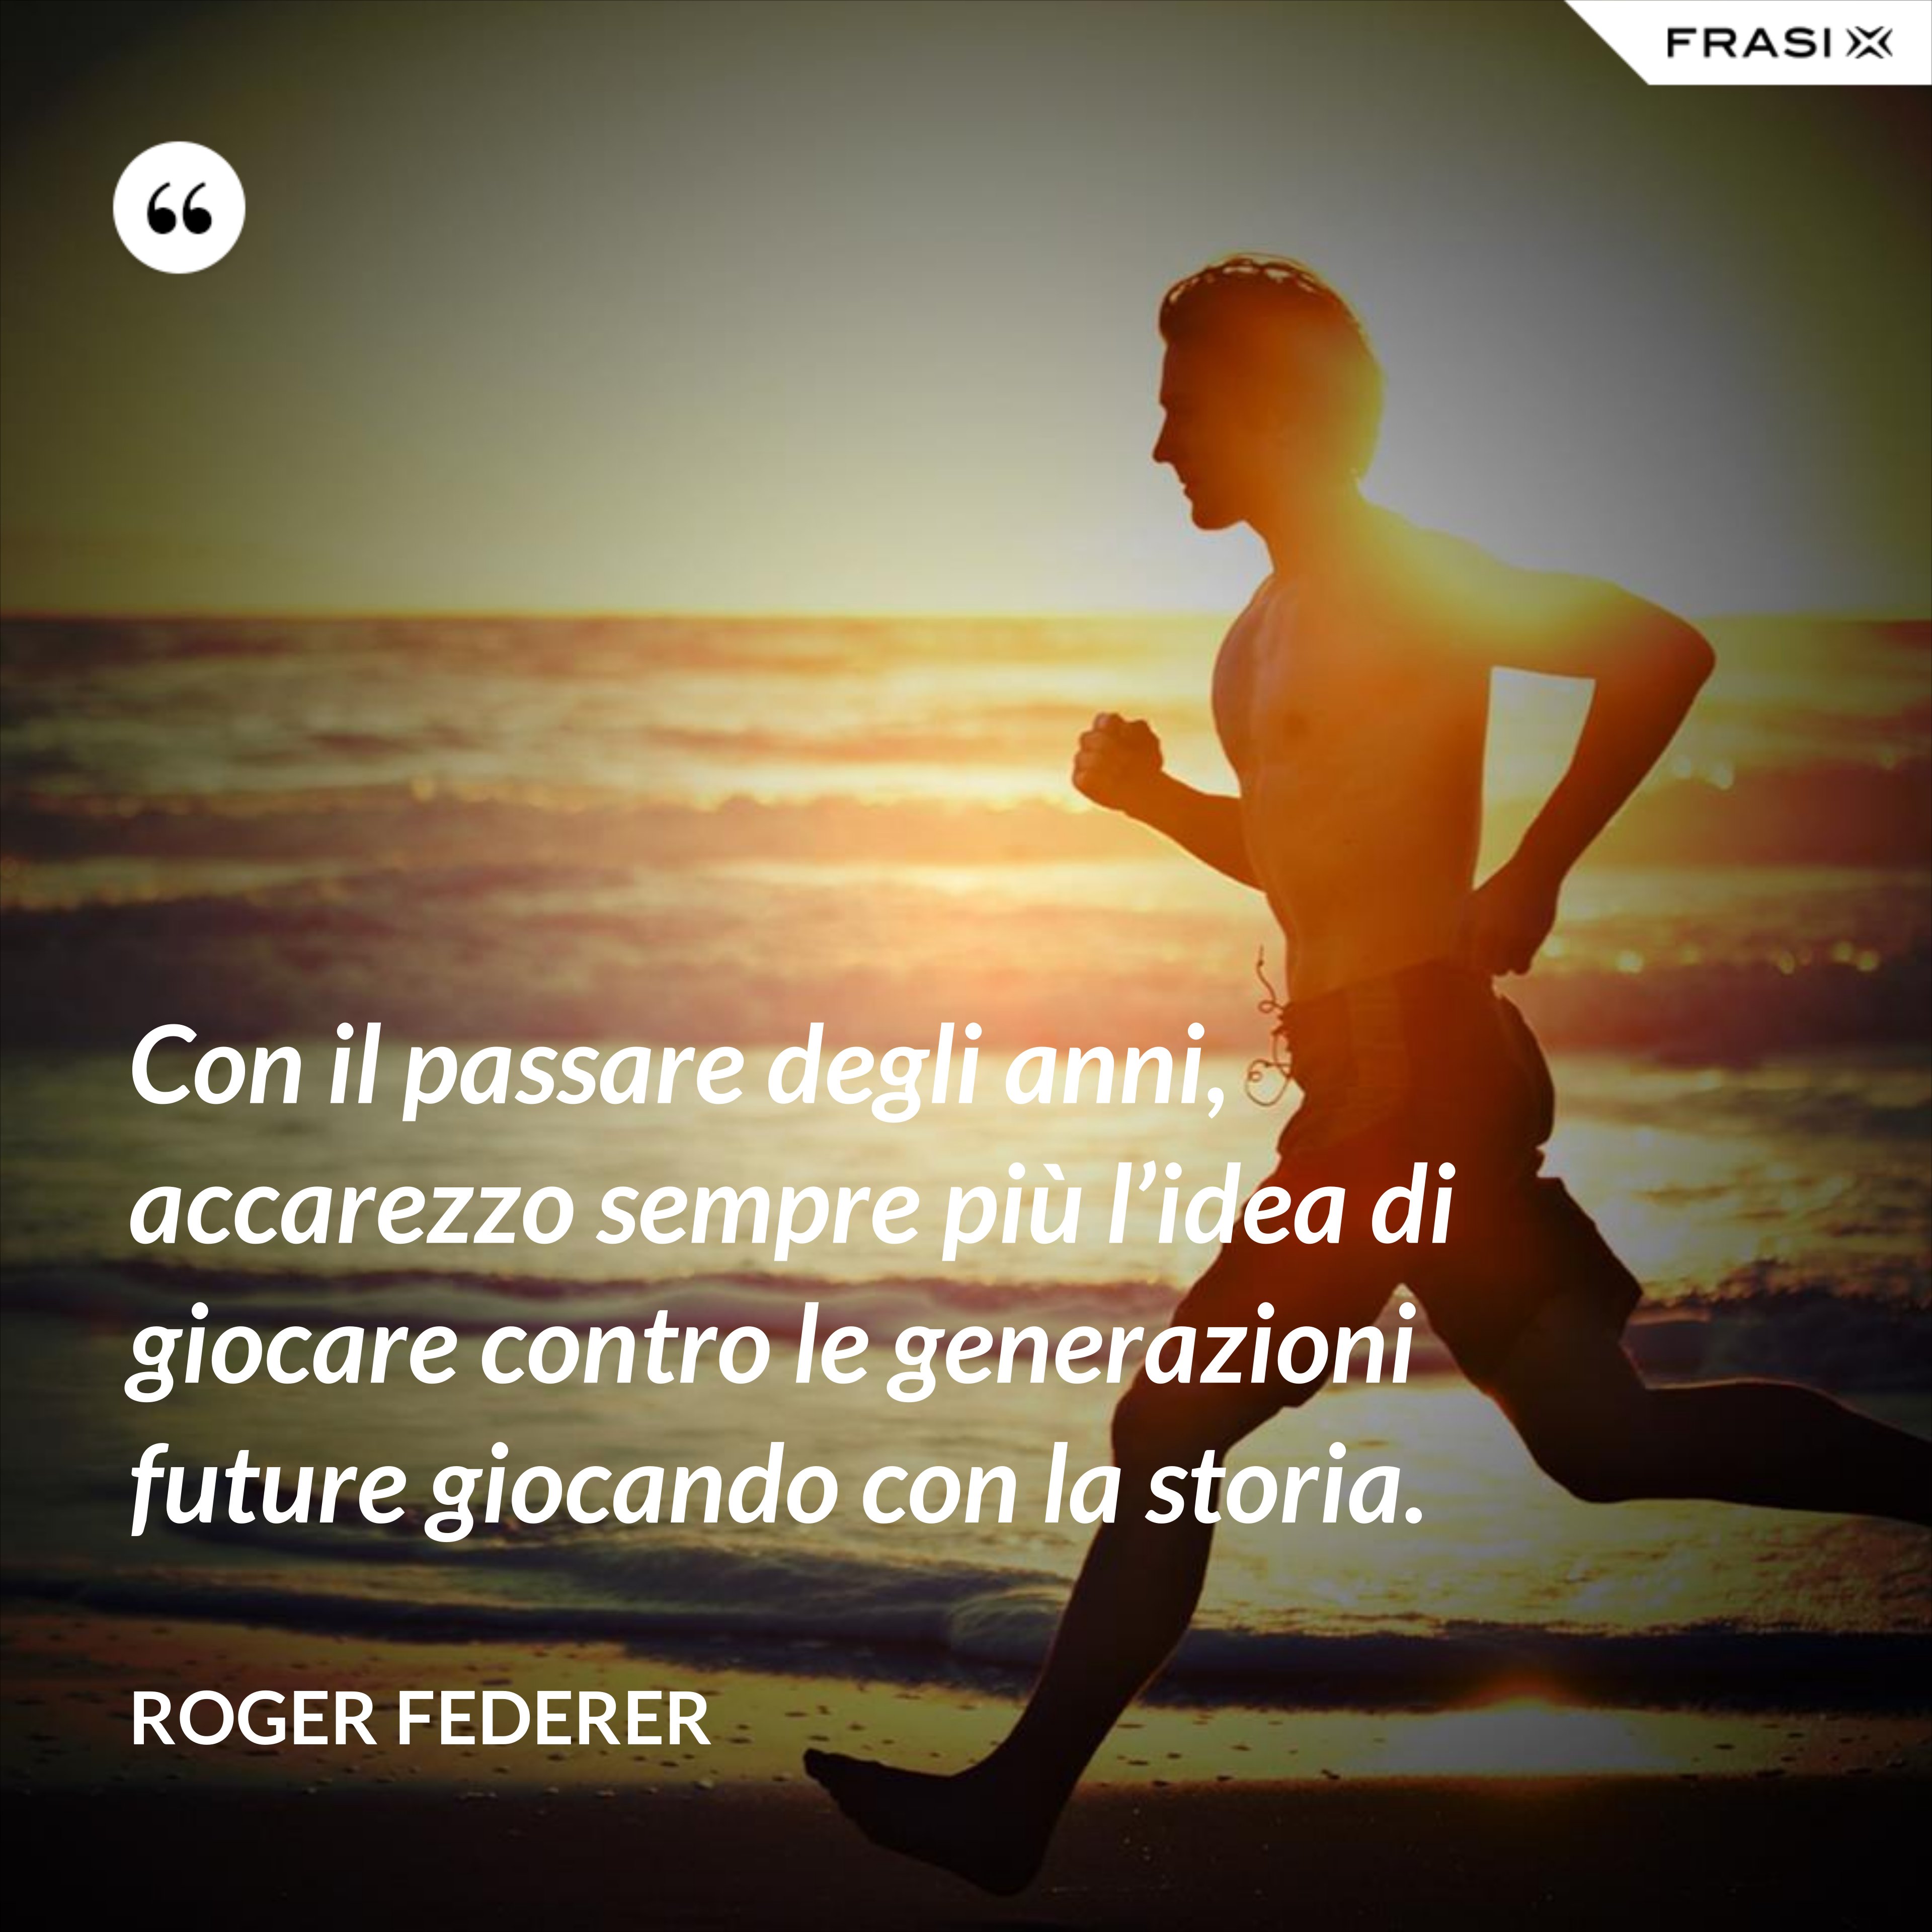 Con il passare degli anni, accarezzo sempre più l’idea di giocare contro le generazioni future giocando con la storia. - Roger Federer